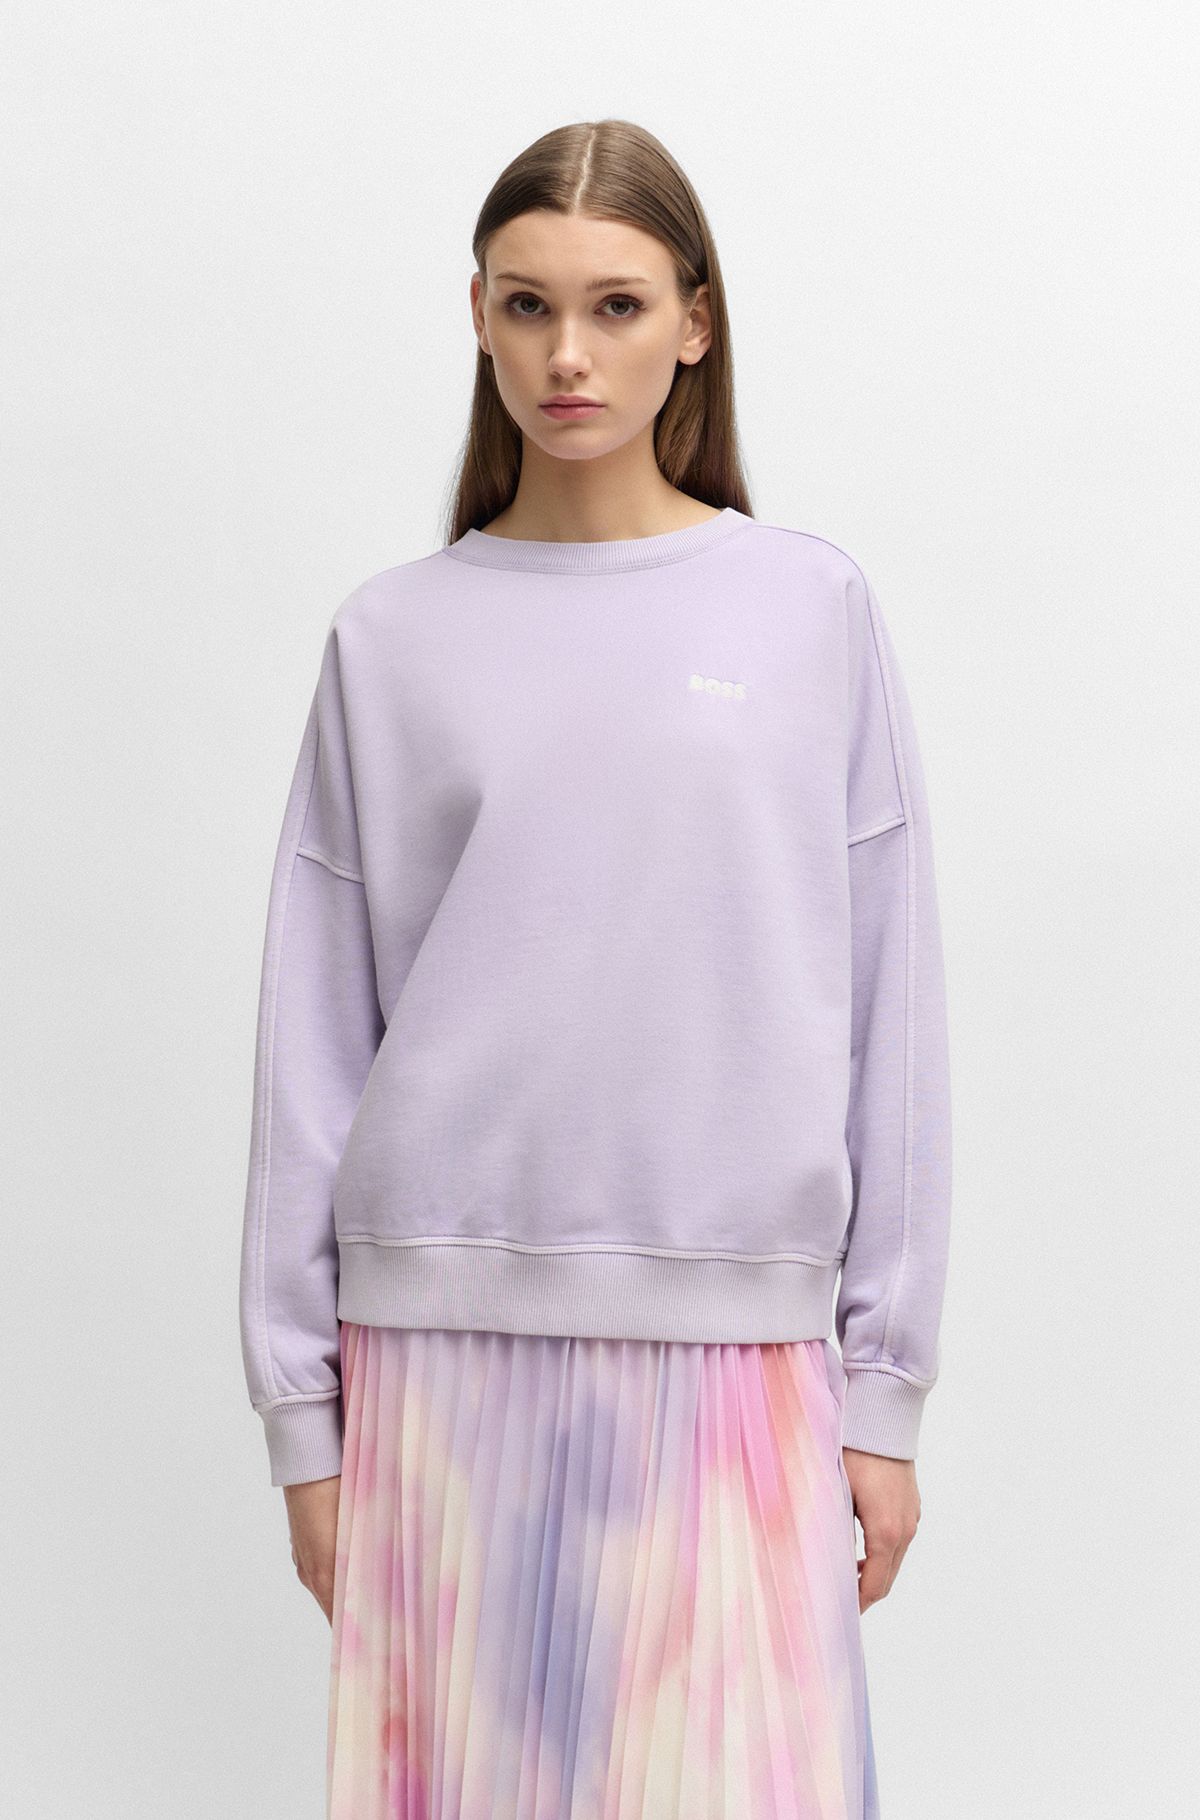 Round-neck sweatshirt in cotton with logo detail, Light Purple